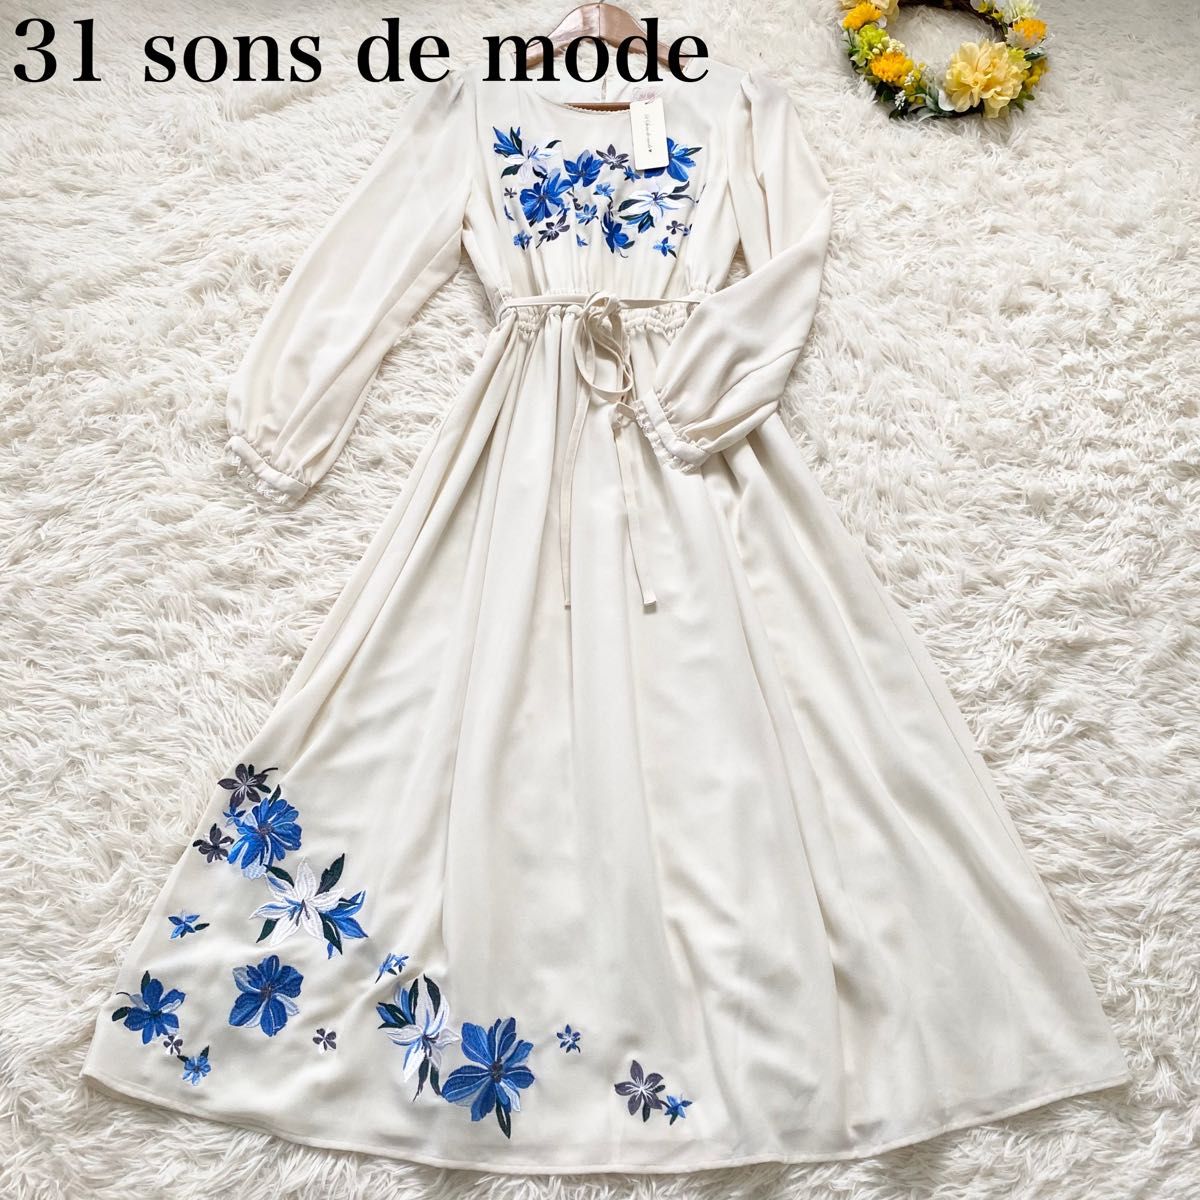 【新品未使用】【31 sons de mode】刺繍ロングワンピース サイズ36